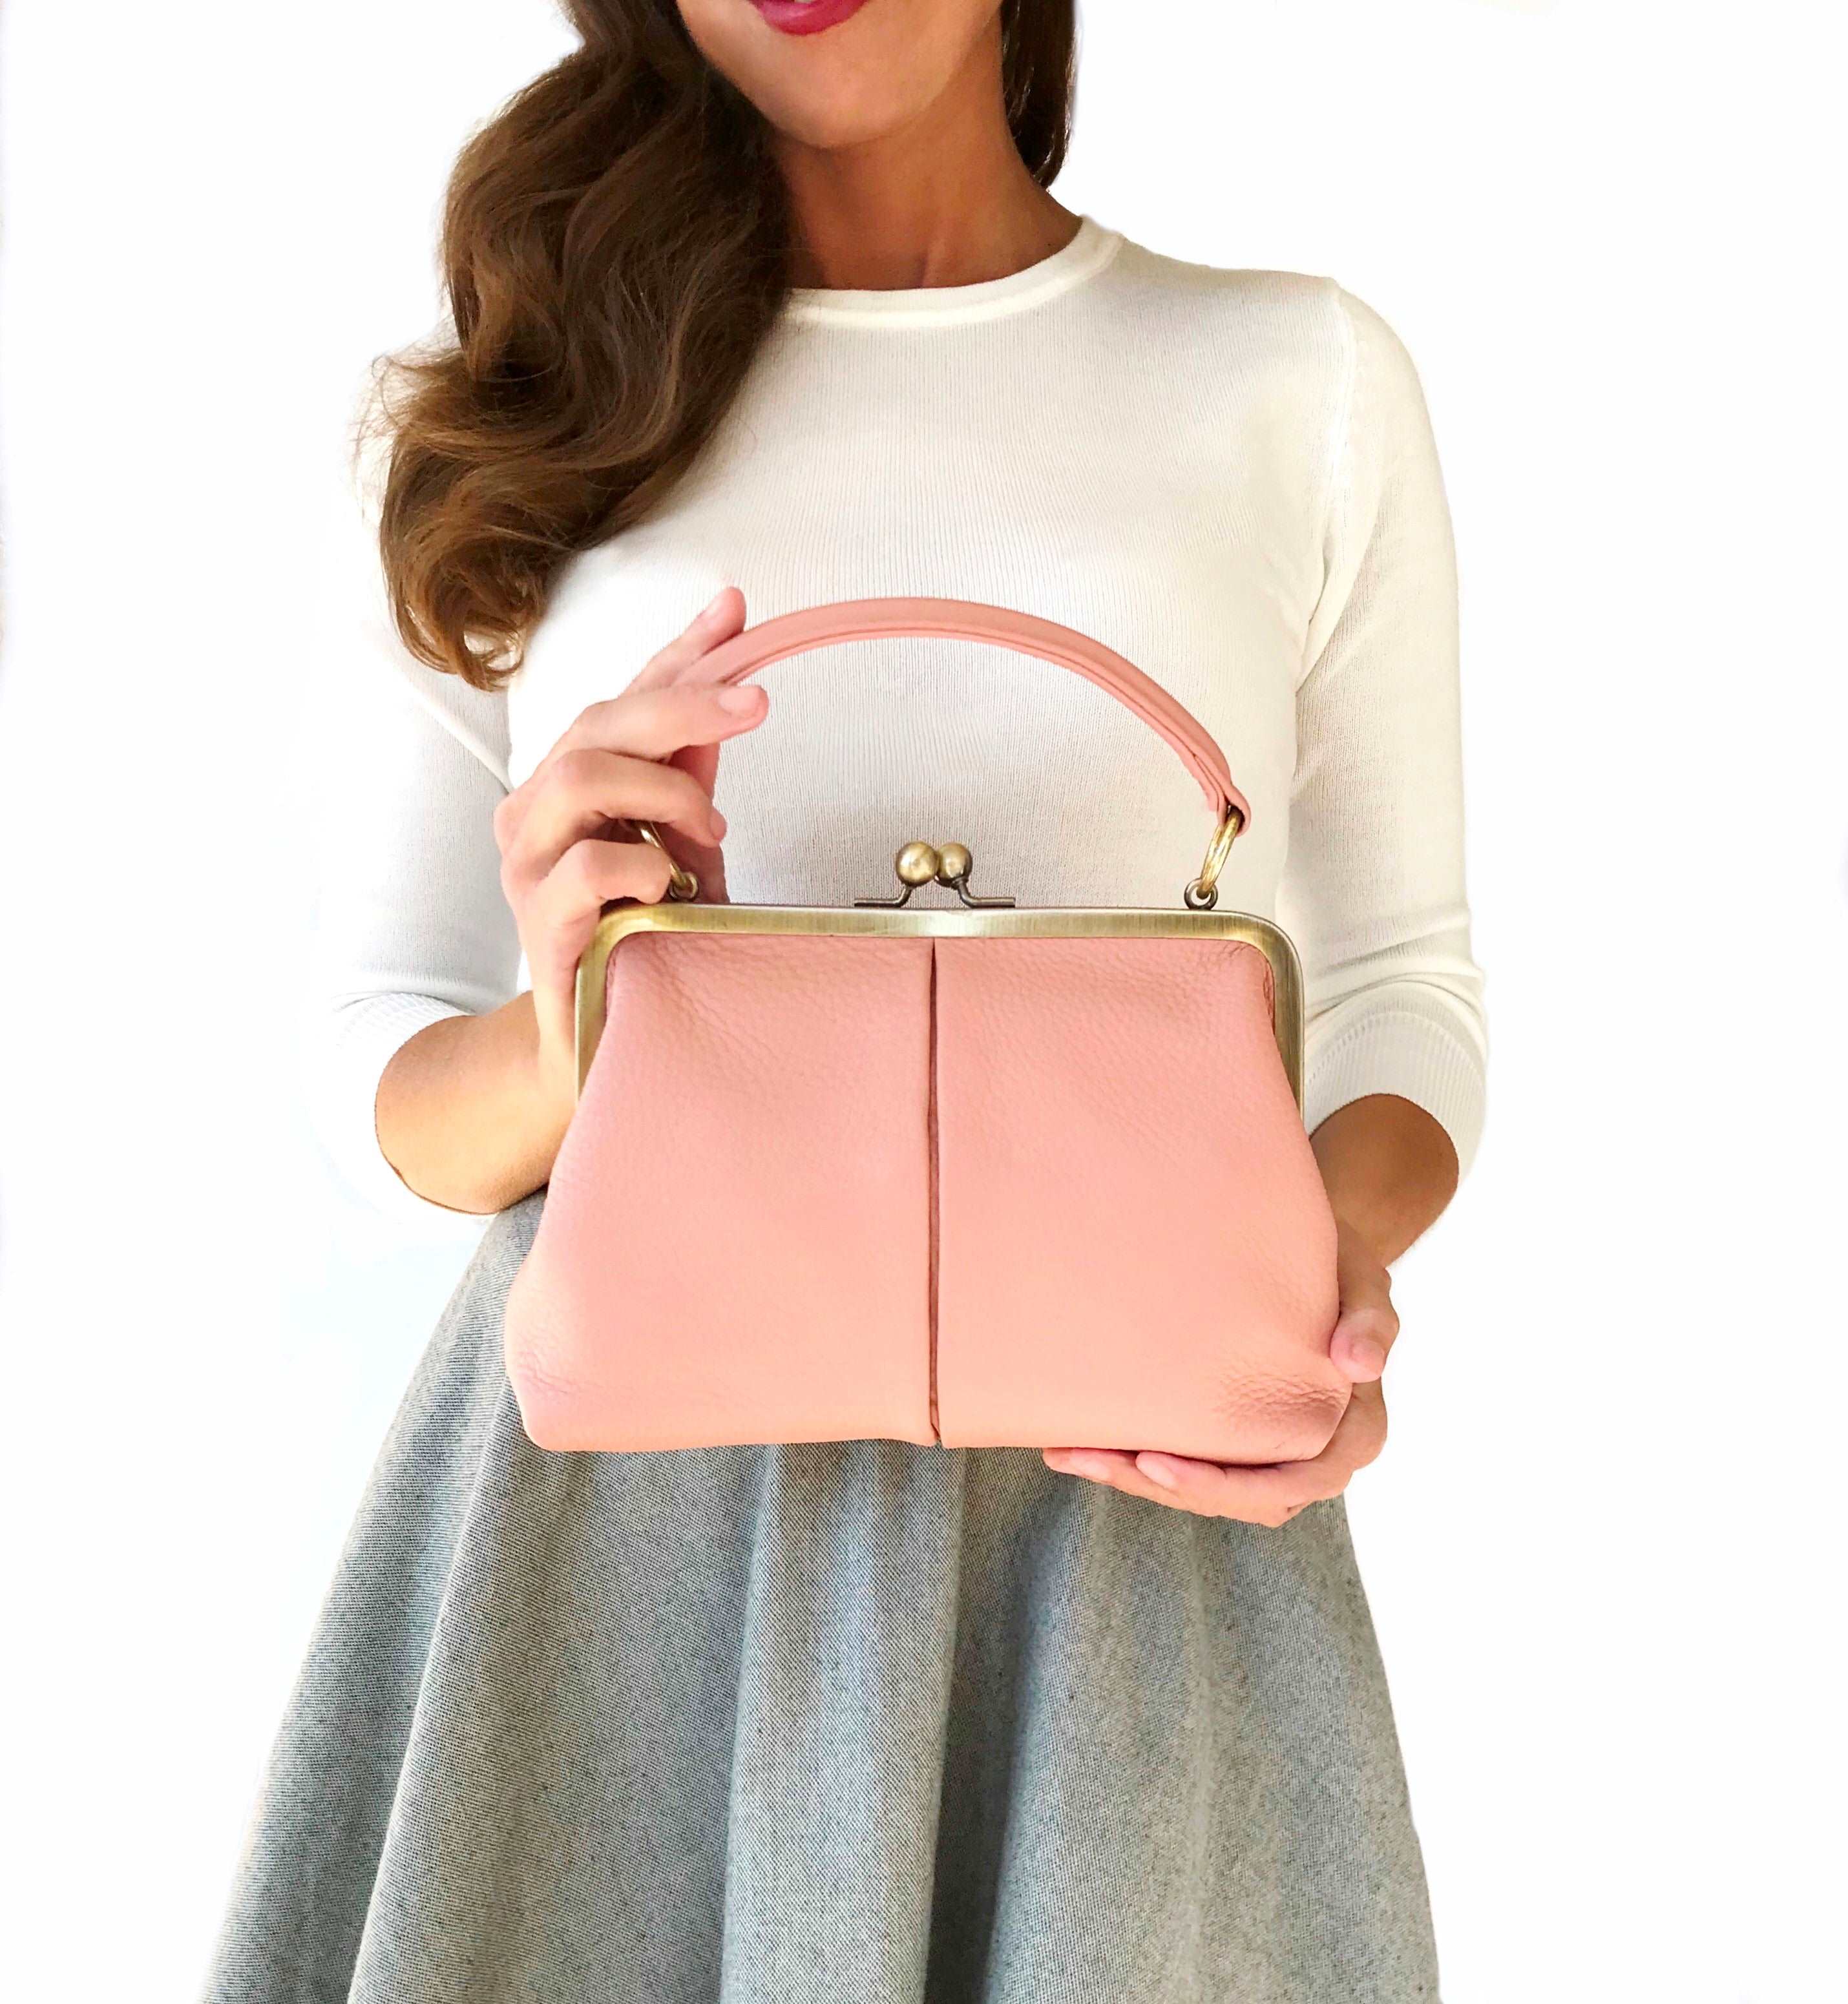 kleine Handtasche Brautasche Ledertasche Disco Tasche XS Bügeltasche rosa  weiß mit Riemchen #Tasche